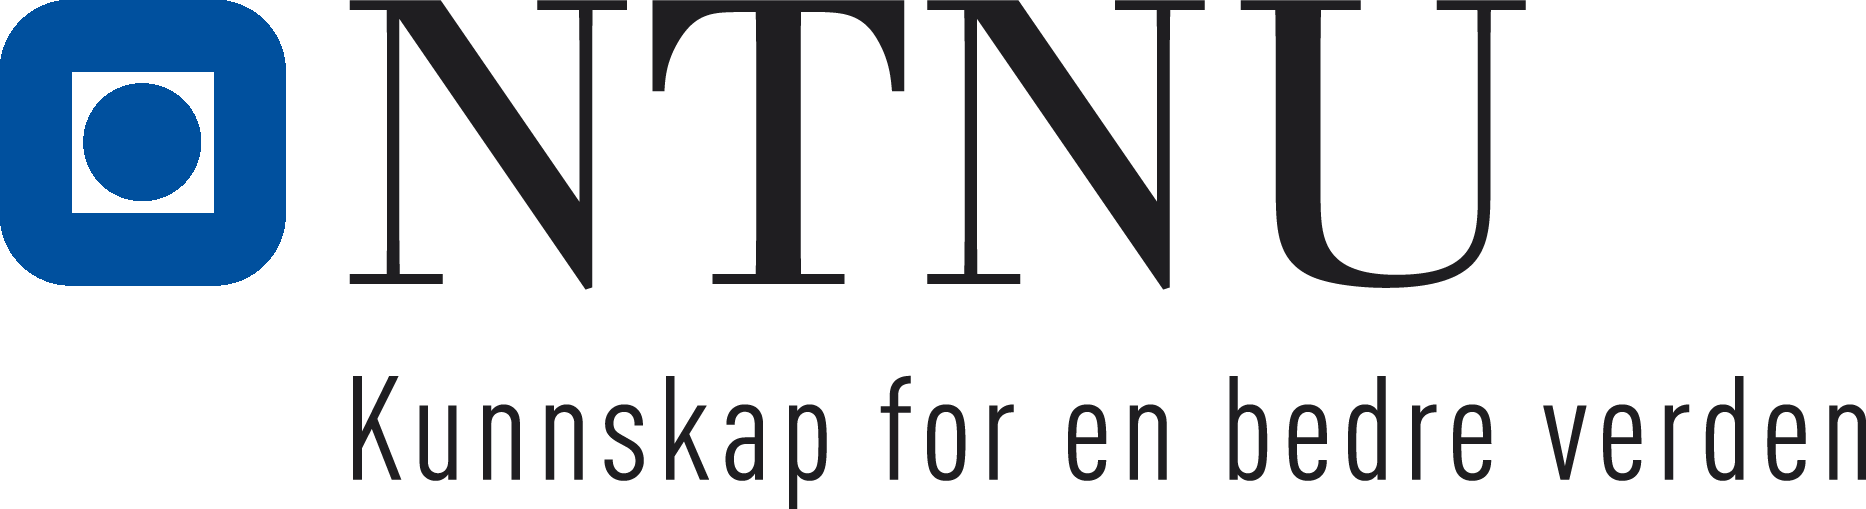 NTNU-logo